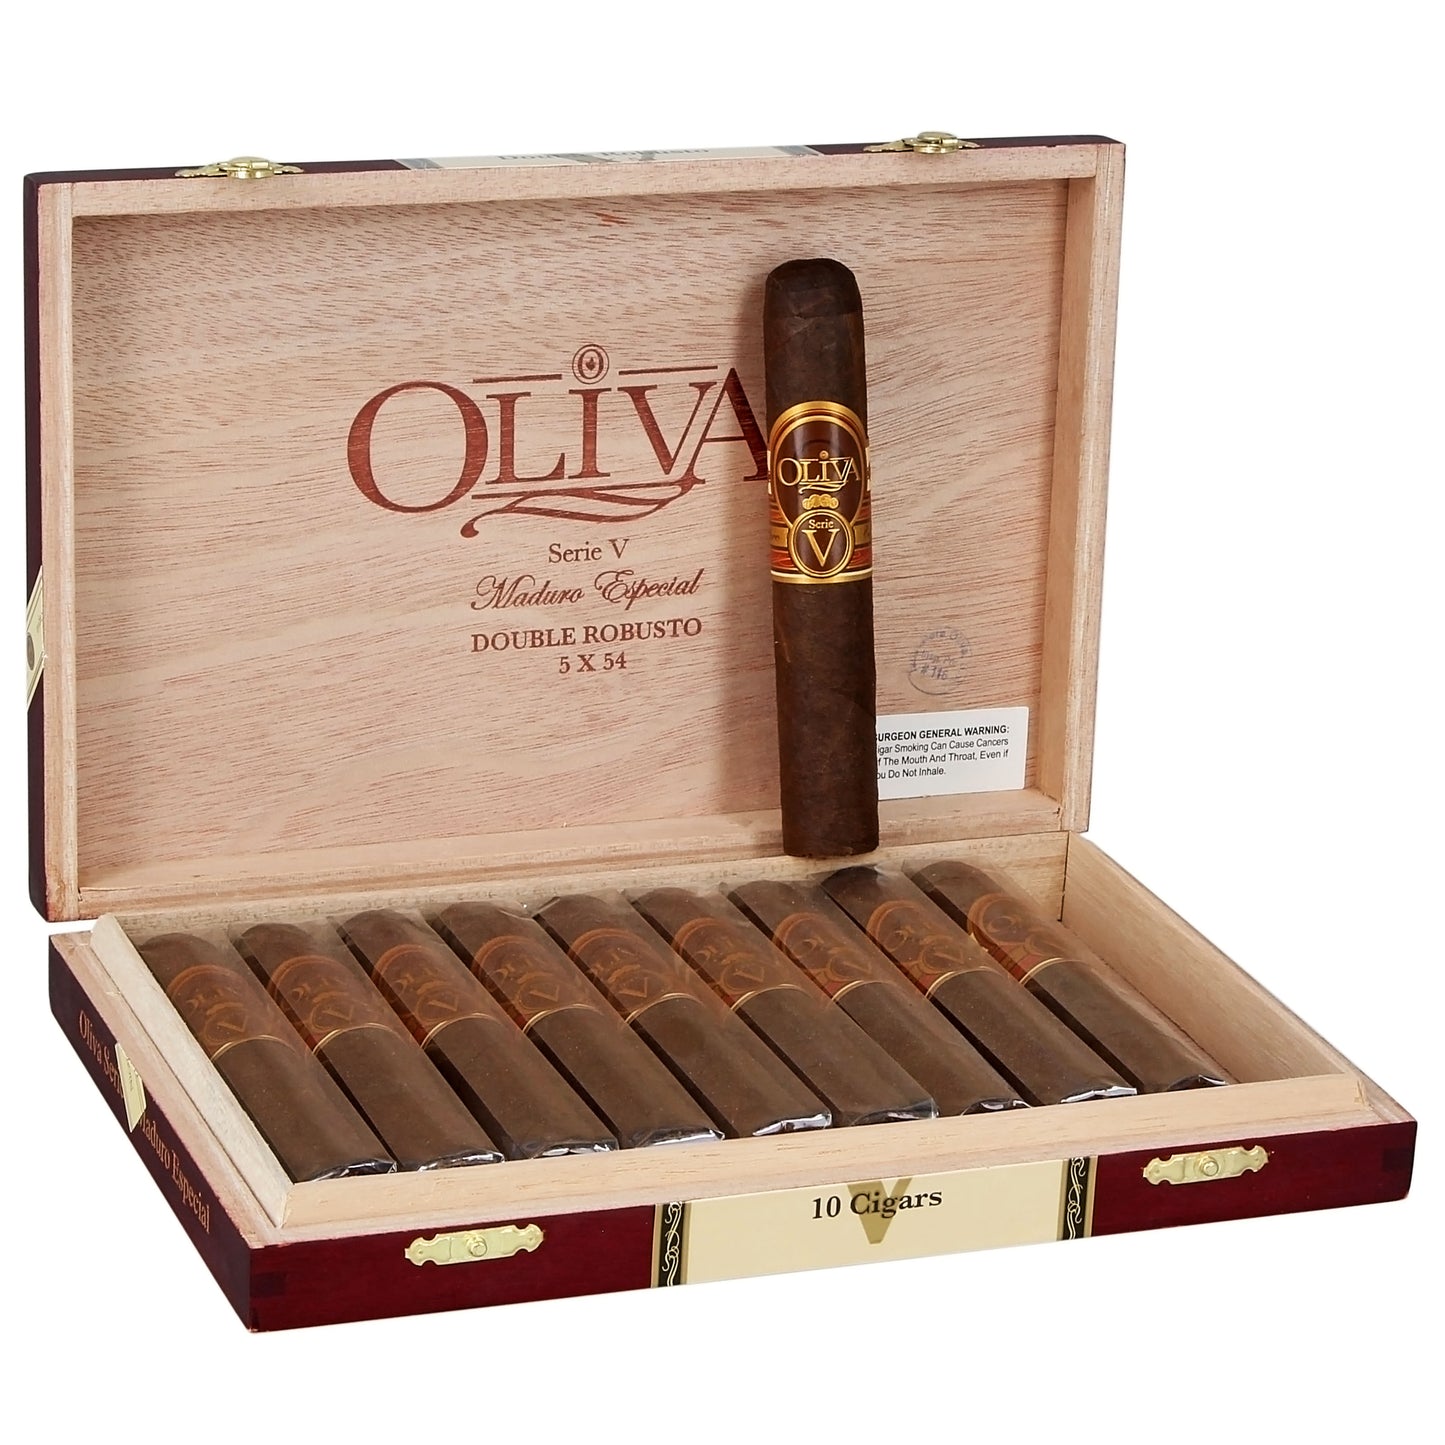 Oliva • Serie V 5x54